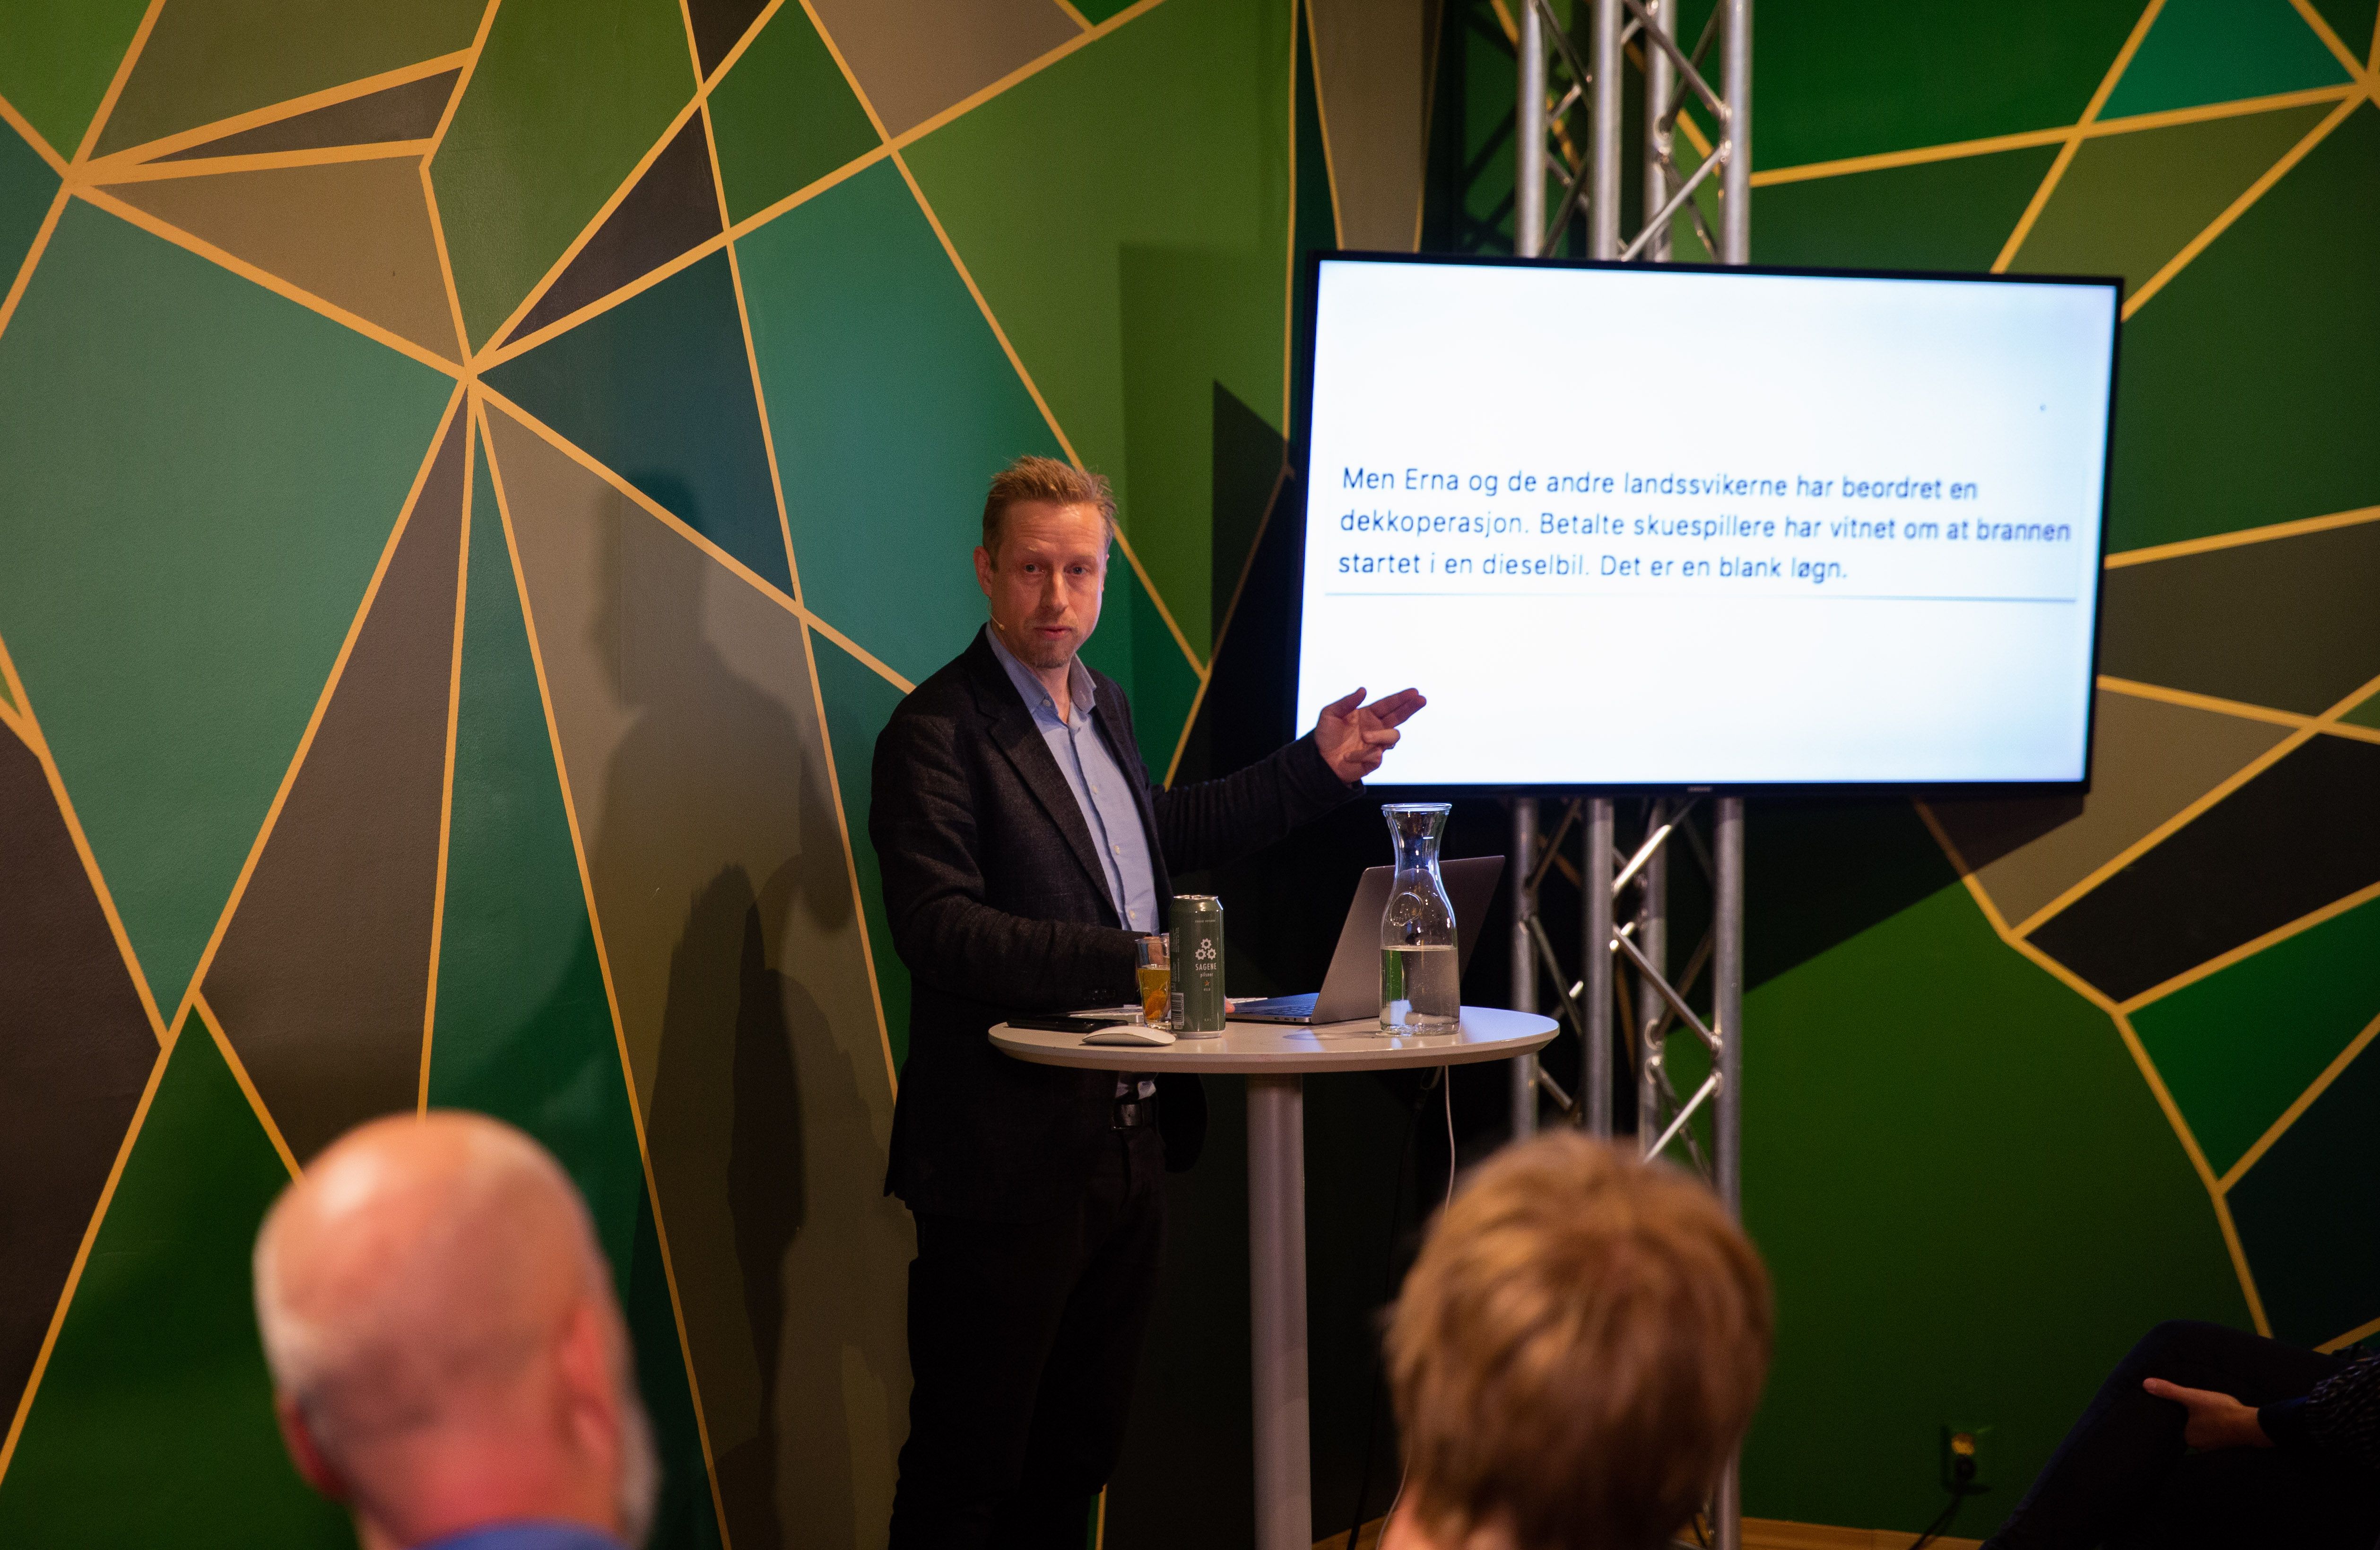 Bilde av Redaktør i Faktisk.no, Kristoffer Egeberg, som prater og presenterer foran en skjerm.